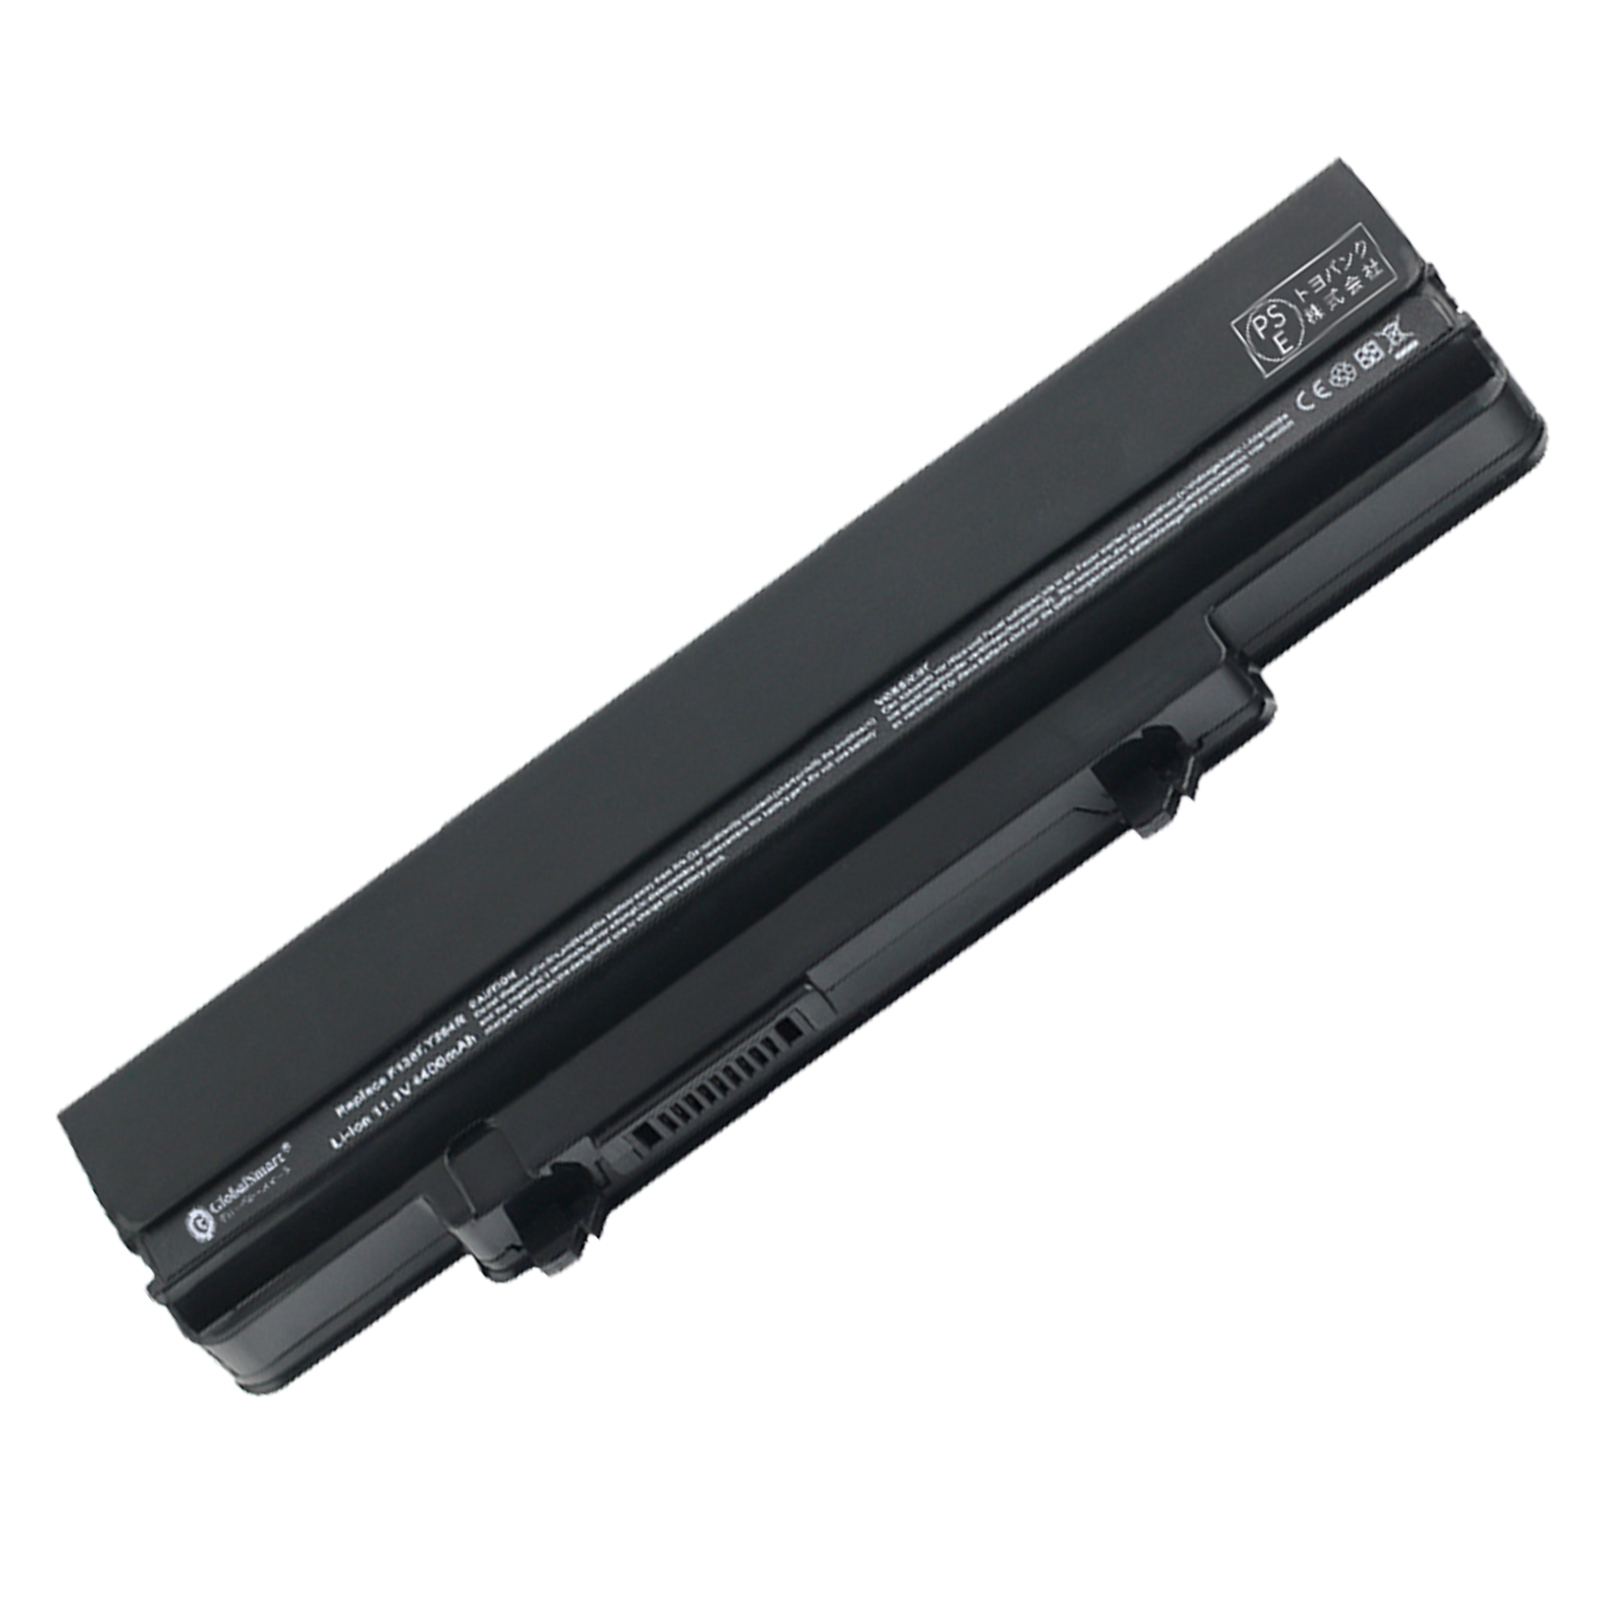 【楽天市場】Globalsmart 新品 DELL Inspiron 1320n Series Laptop Battery 大容量互換